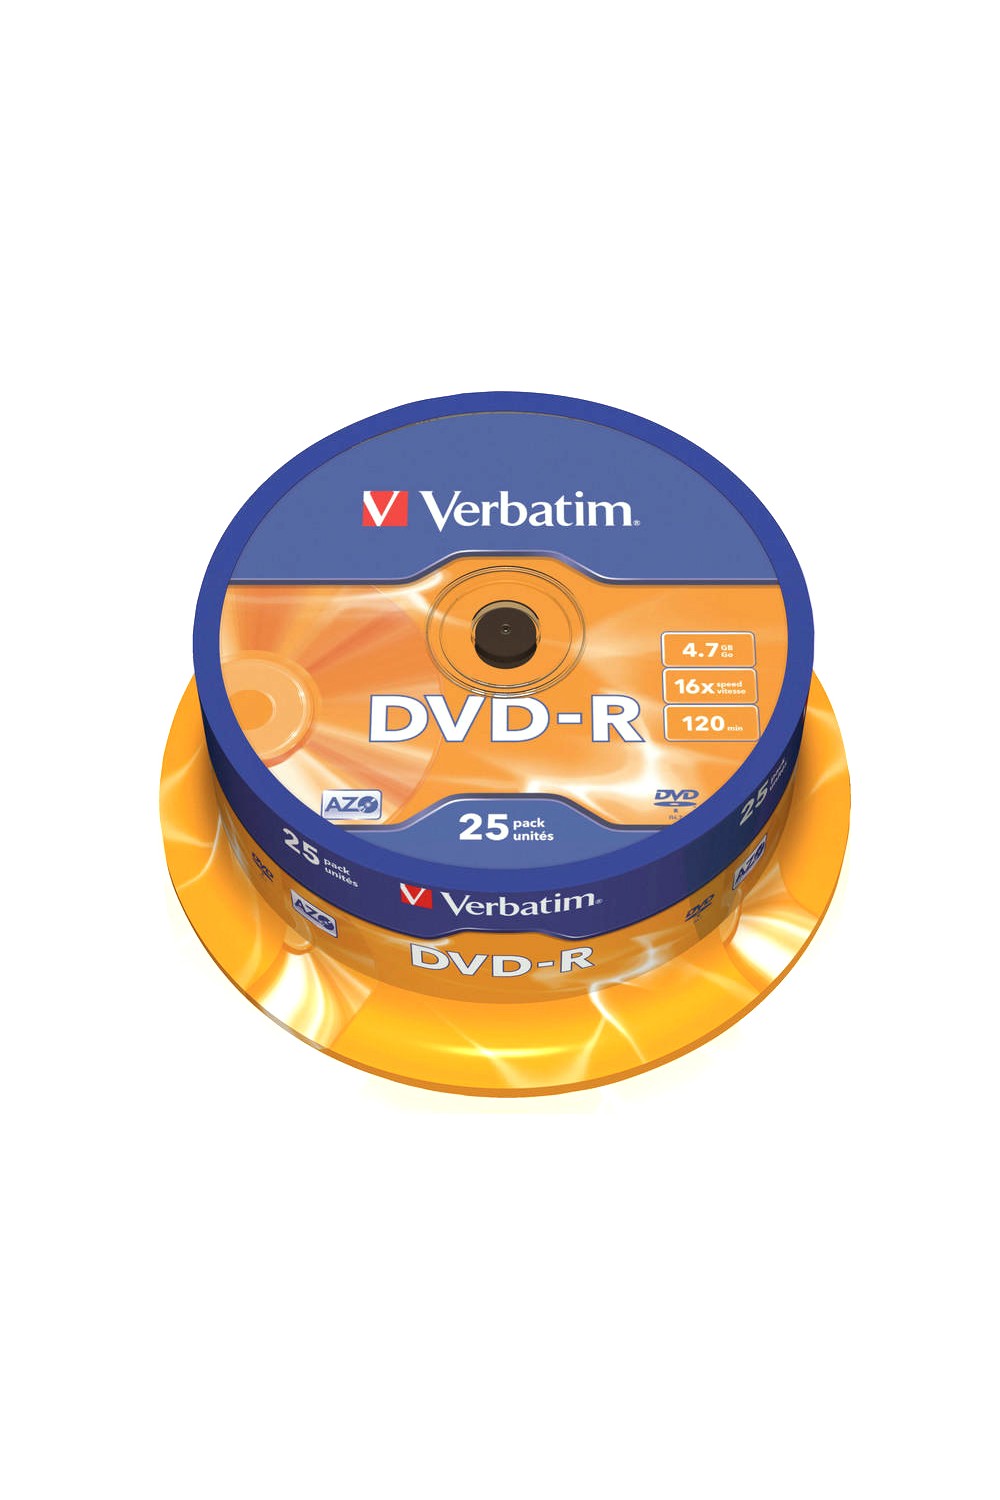 DVD-R Verbatim 16x 4.7GB 25 τεμ.